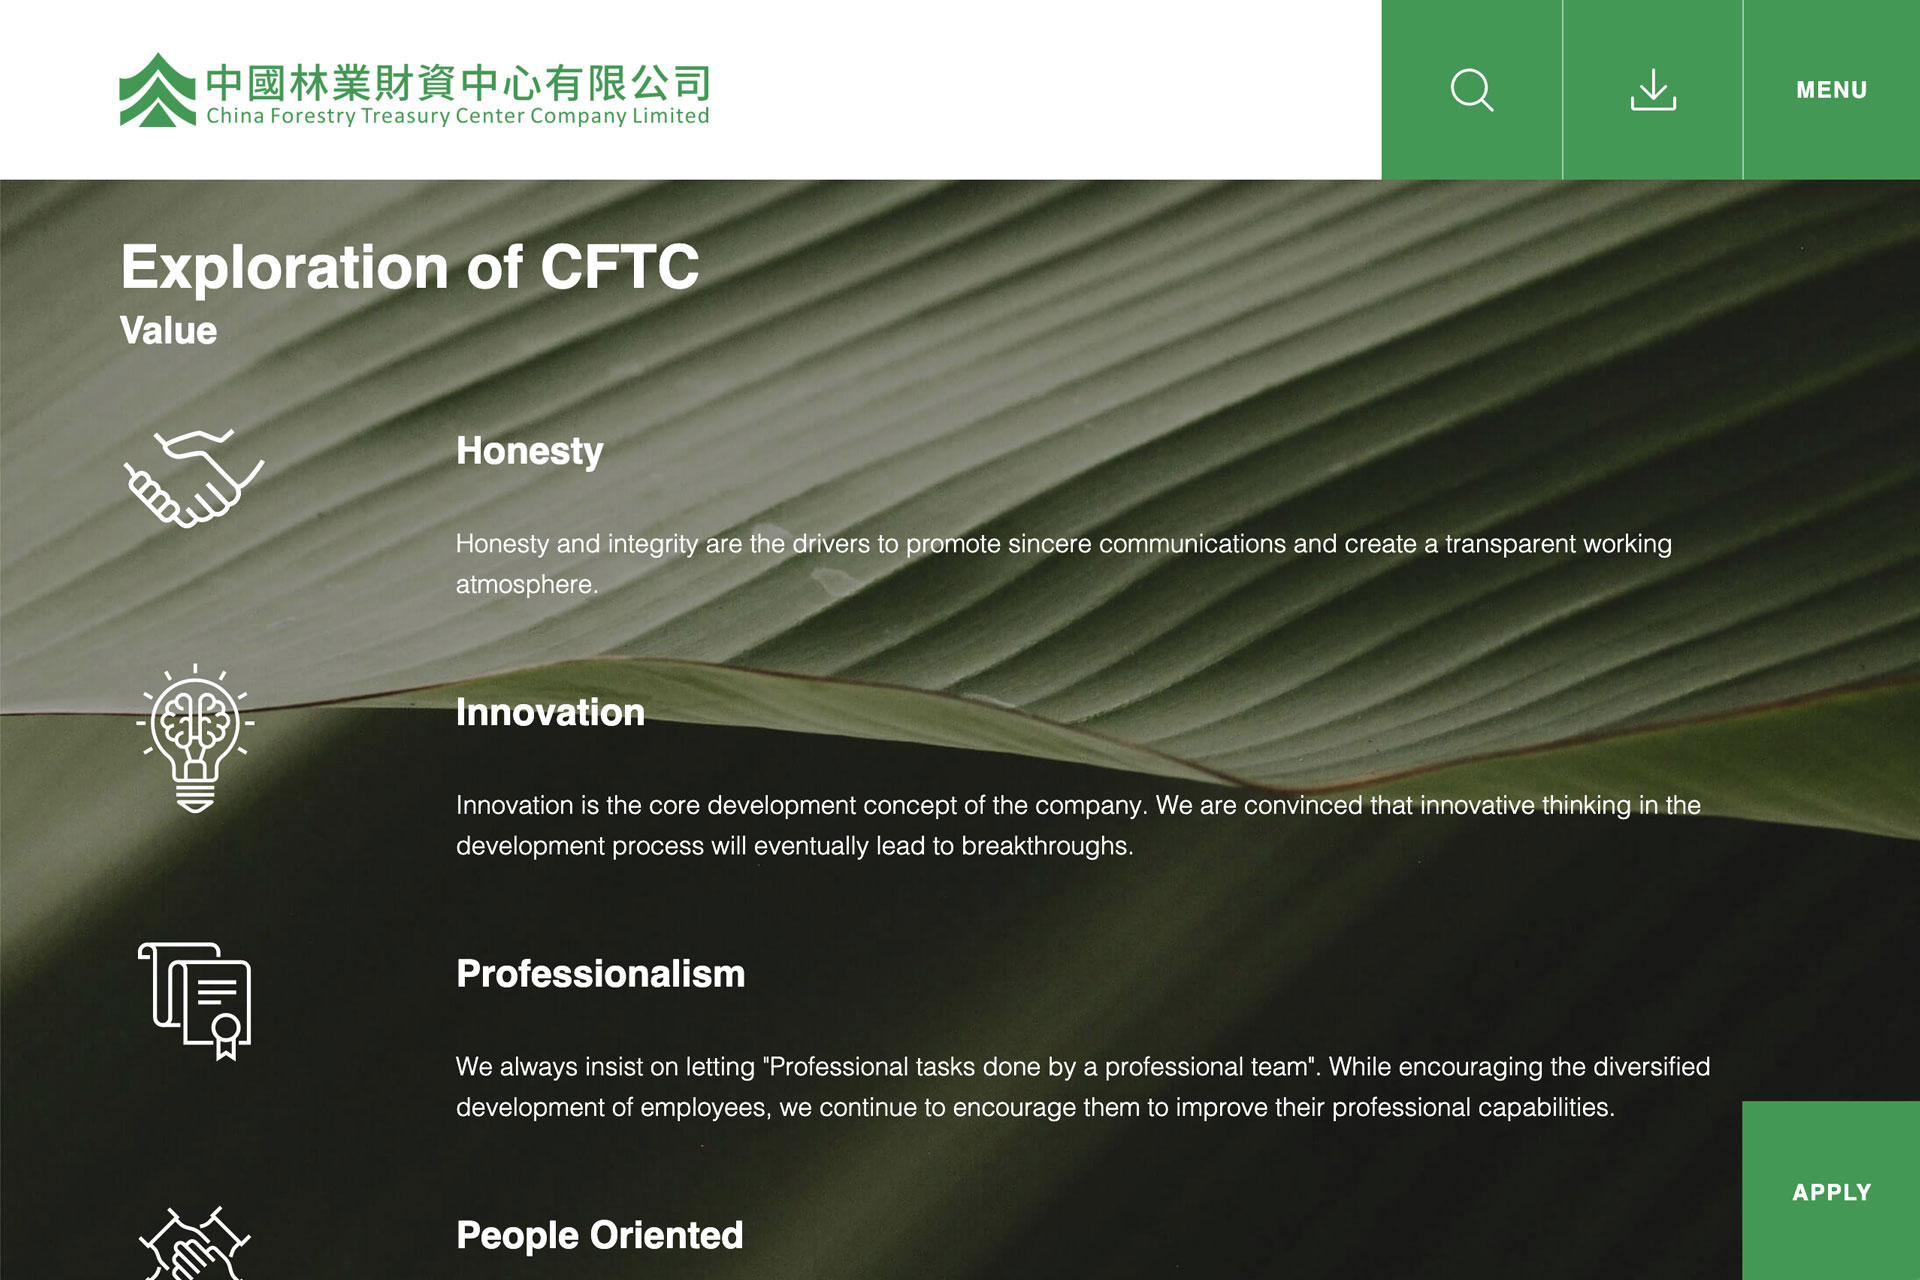 China Forestry Treasury Center Company Limited